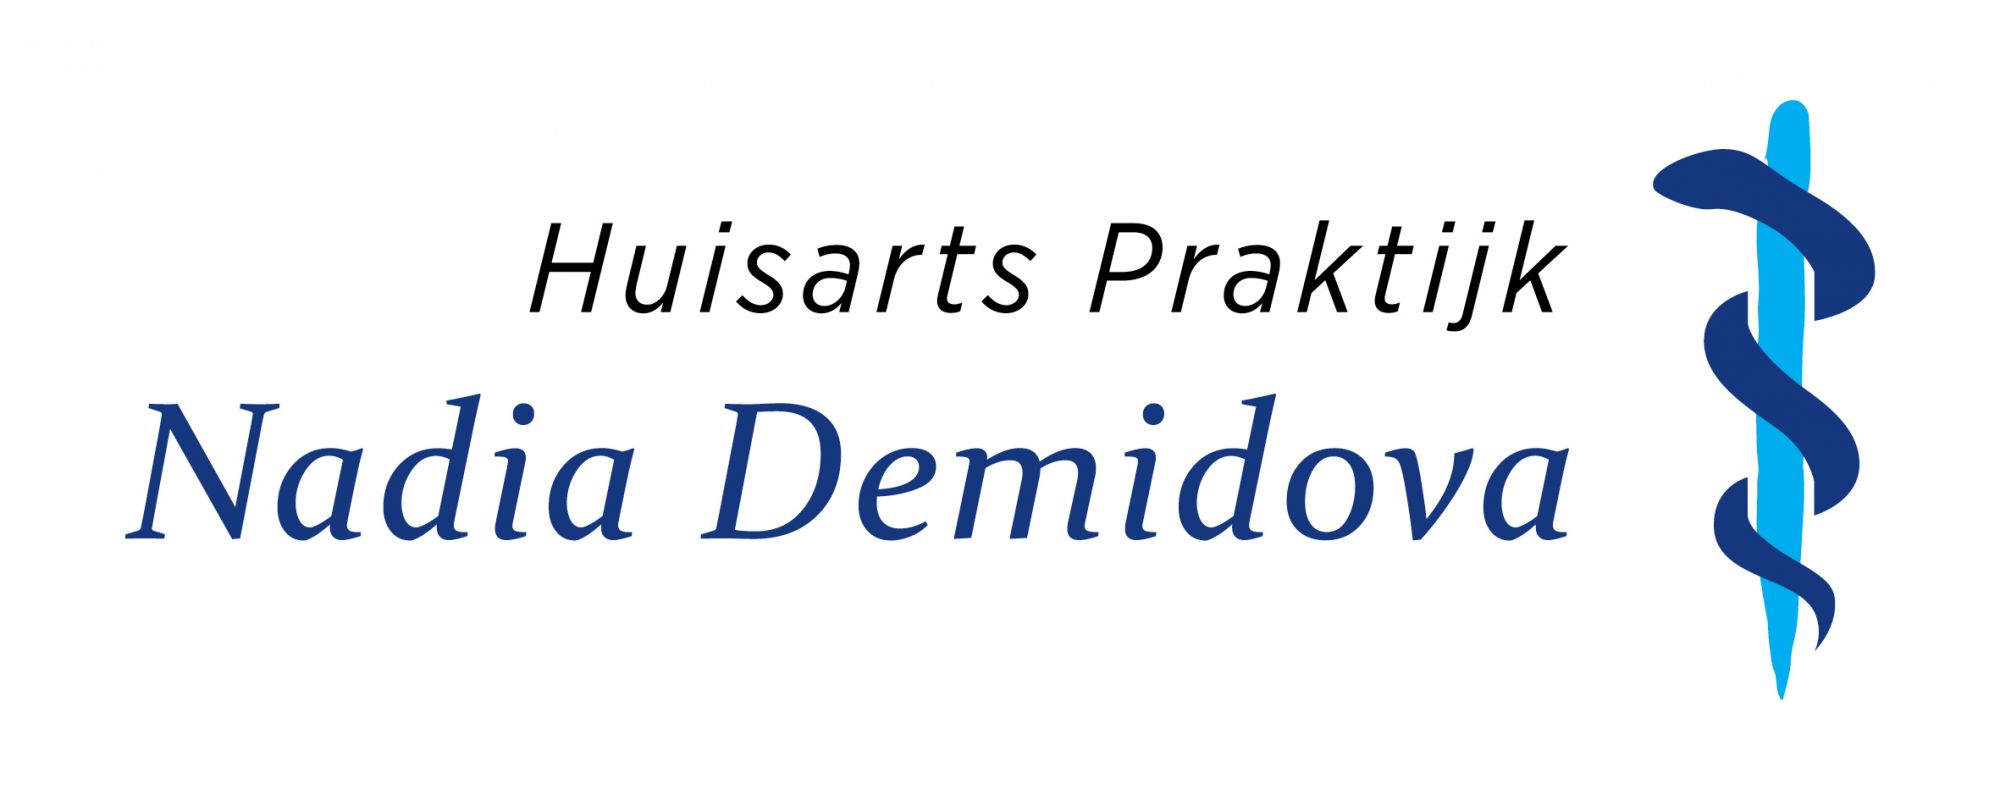 Huisartspraktijk-Demidova-logo.jpg